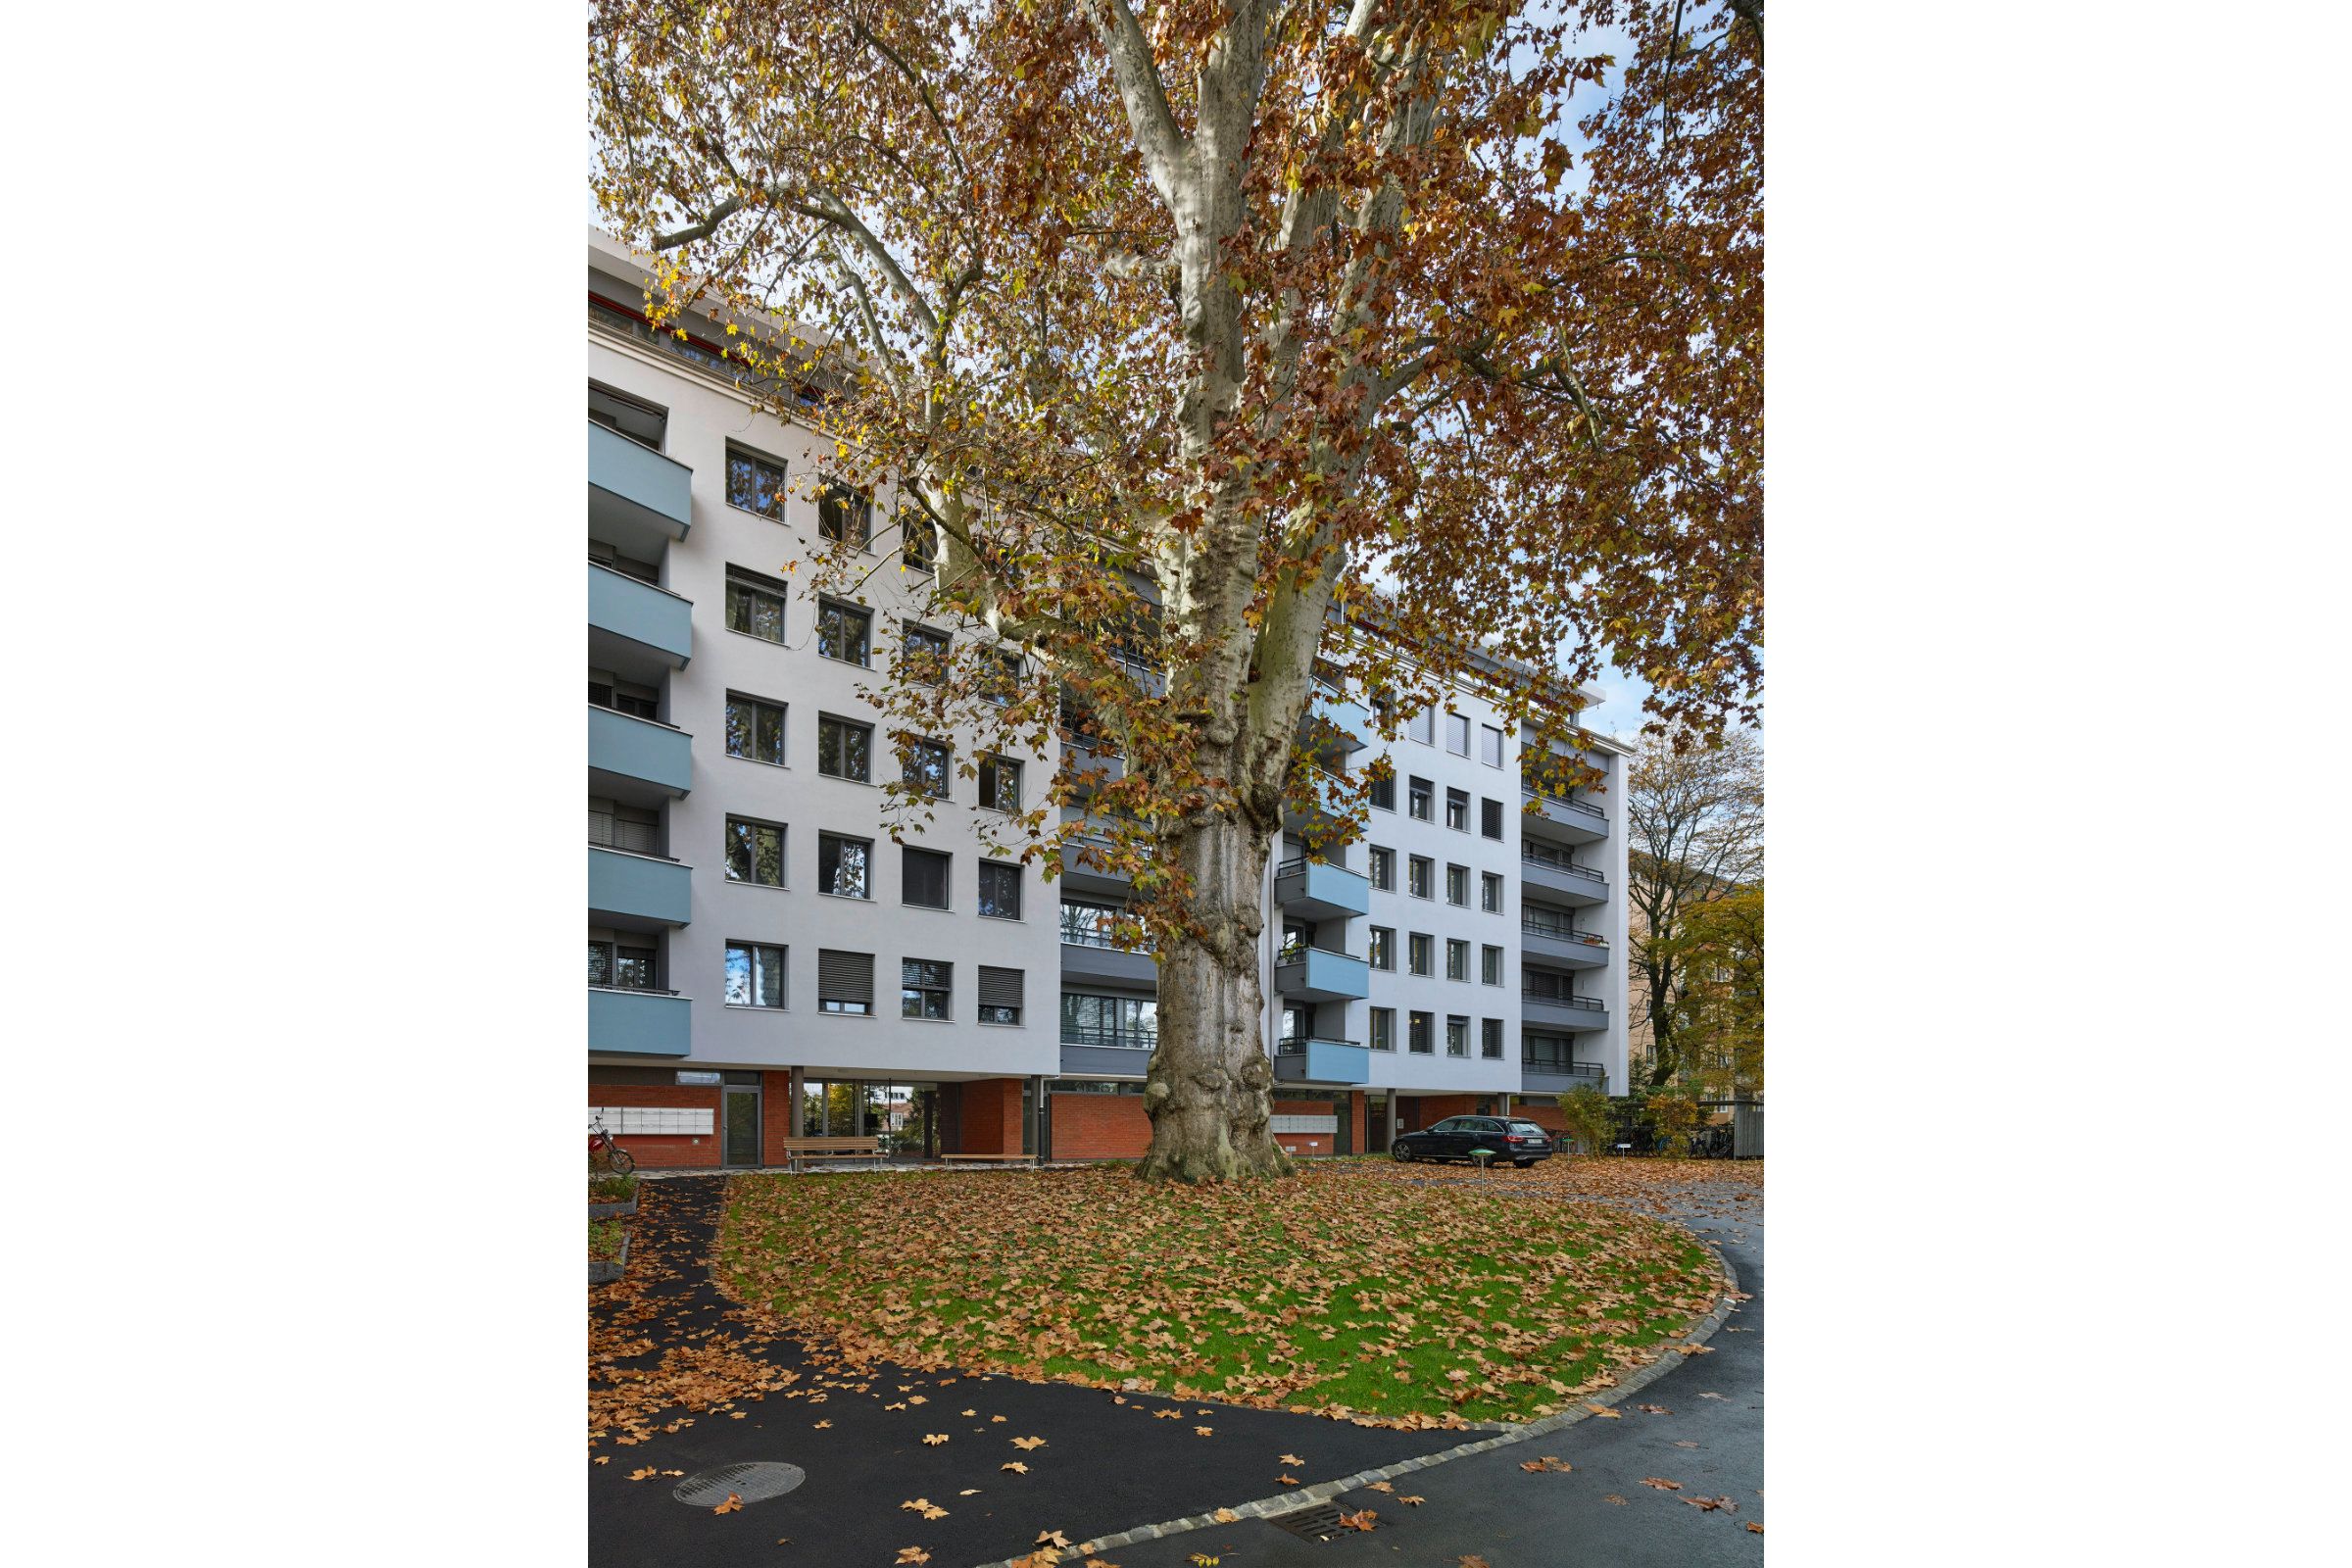 Projektfotografie Fassadensanierung und Aufstockung von drei Mehrfamilienhäusern am Gundeldingerrain in Basel